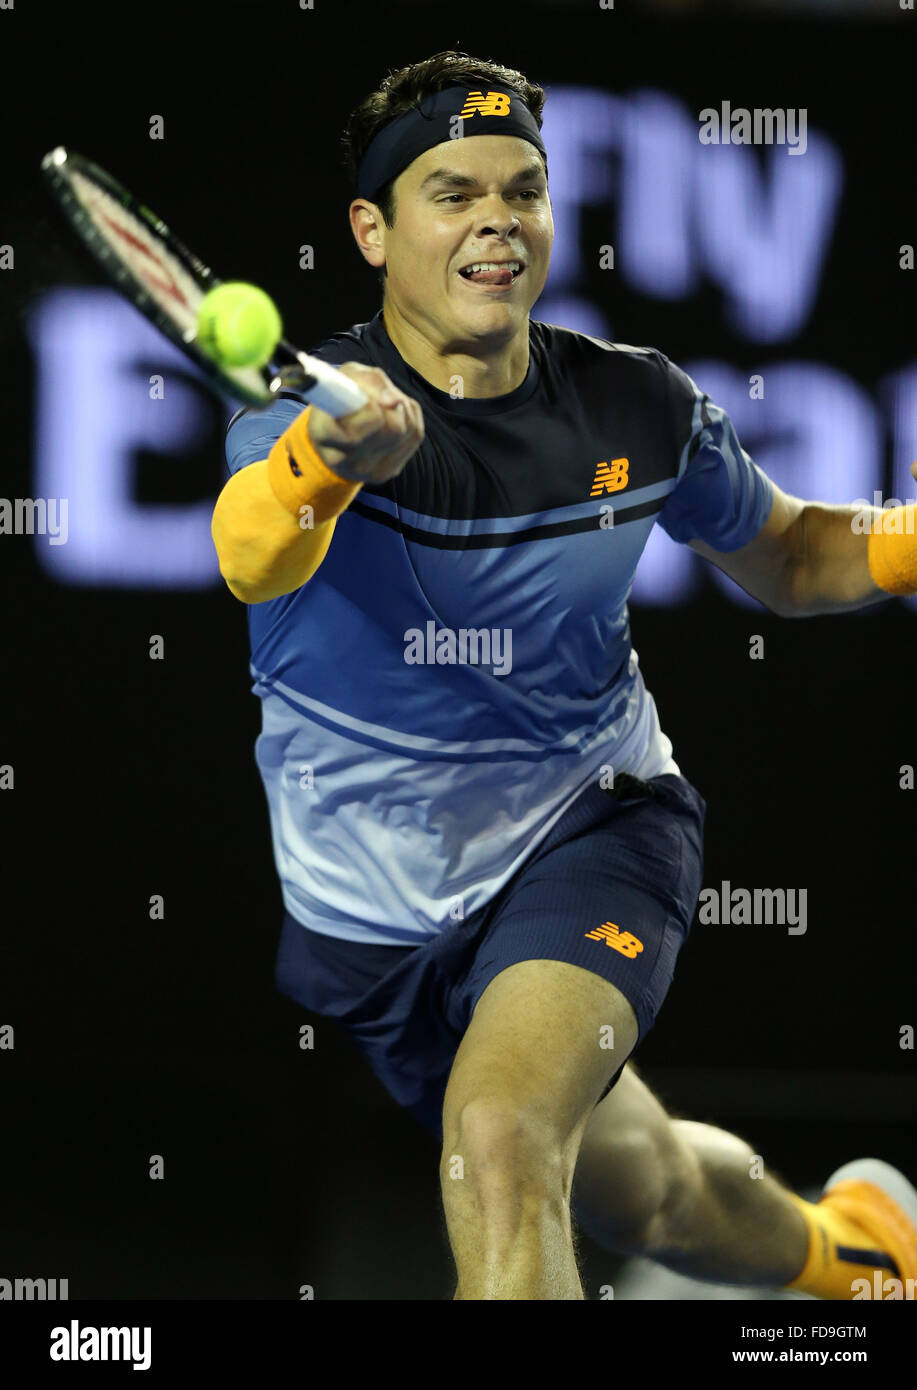 Melbourne, Australie. 29 janvier, 2016. Milos Raonic du Canada est en concurrence contre Andy Murray de Grande-Bretagne au cours de la demi-finale du simple messieurs à l'Open d'Australie de Tennis à Melbourne, Australie, le 29 janvier 2016. Credit : Bi Mingming/Xinhua/Alamy Live News Banque D'Images